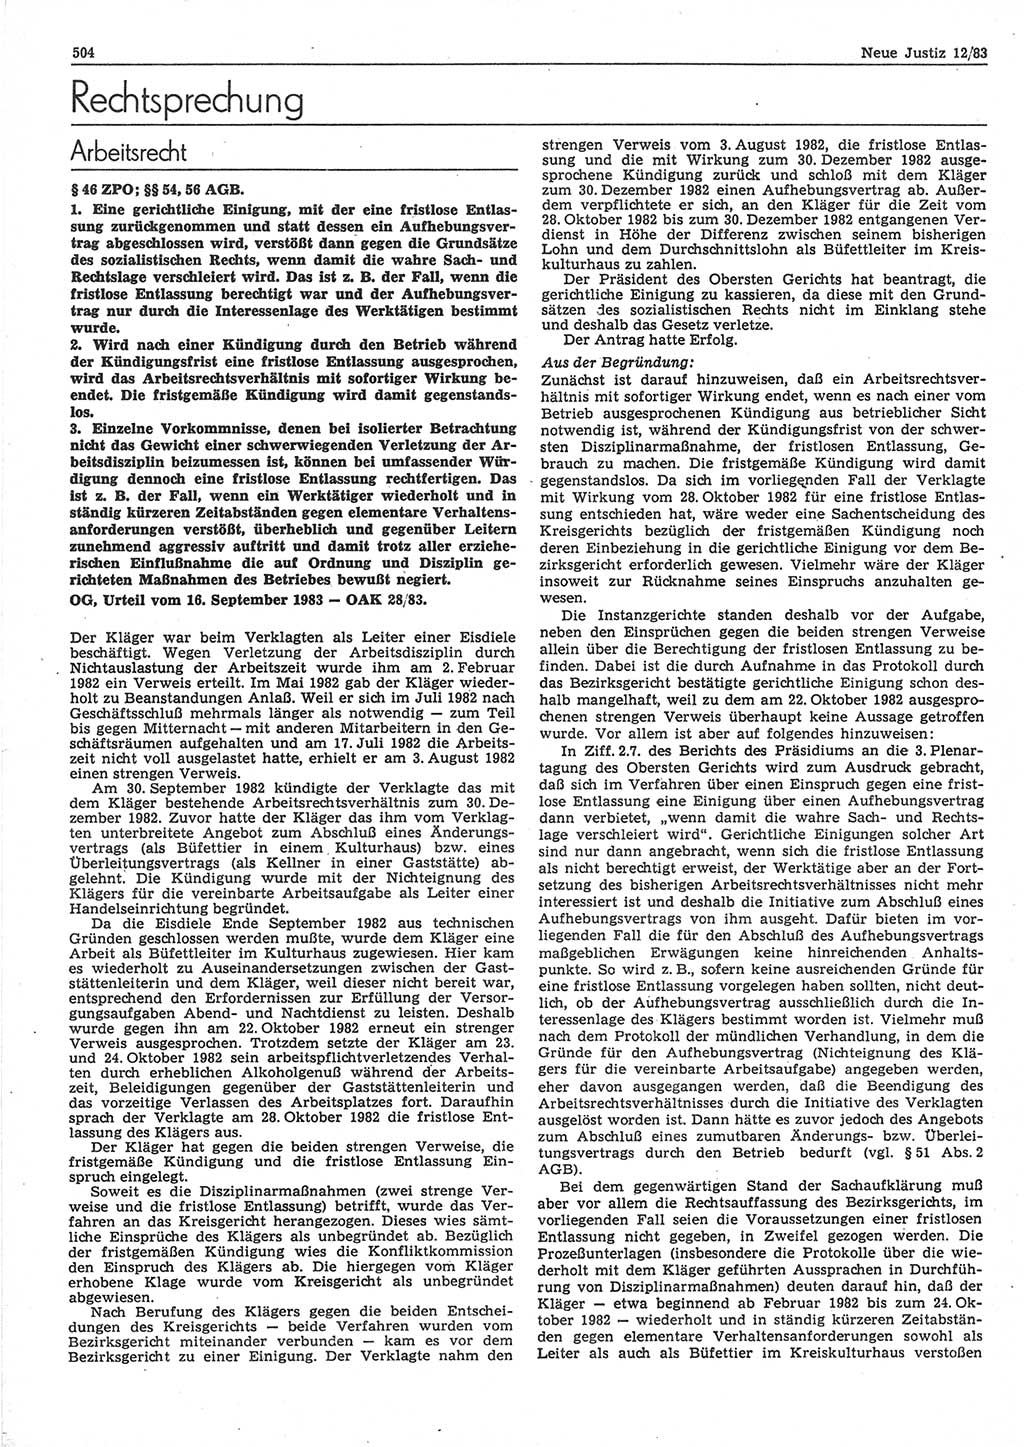 Neue Justiz (NJ), Zeitschrift für sozialistisches Recht und Gesetzlichkeit [Deutsche Demokratische Republik (DDR)], 37. Jahrgang 1983, Seite 504 (NJ DDR 1983, S. 504)